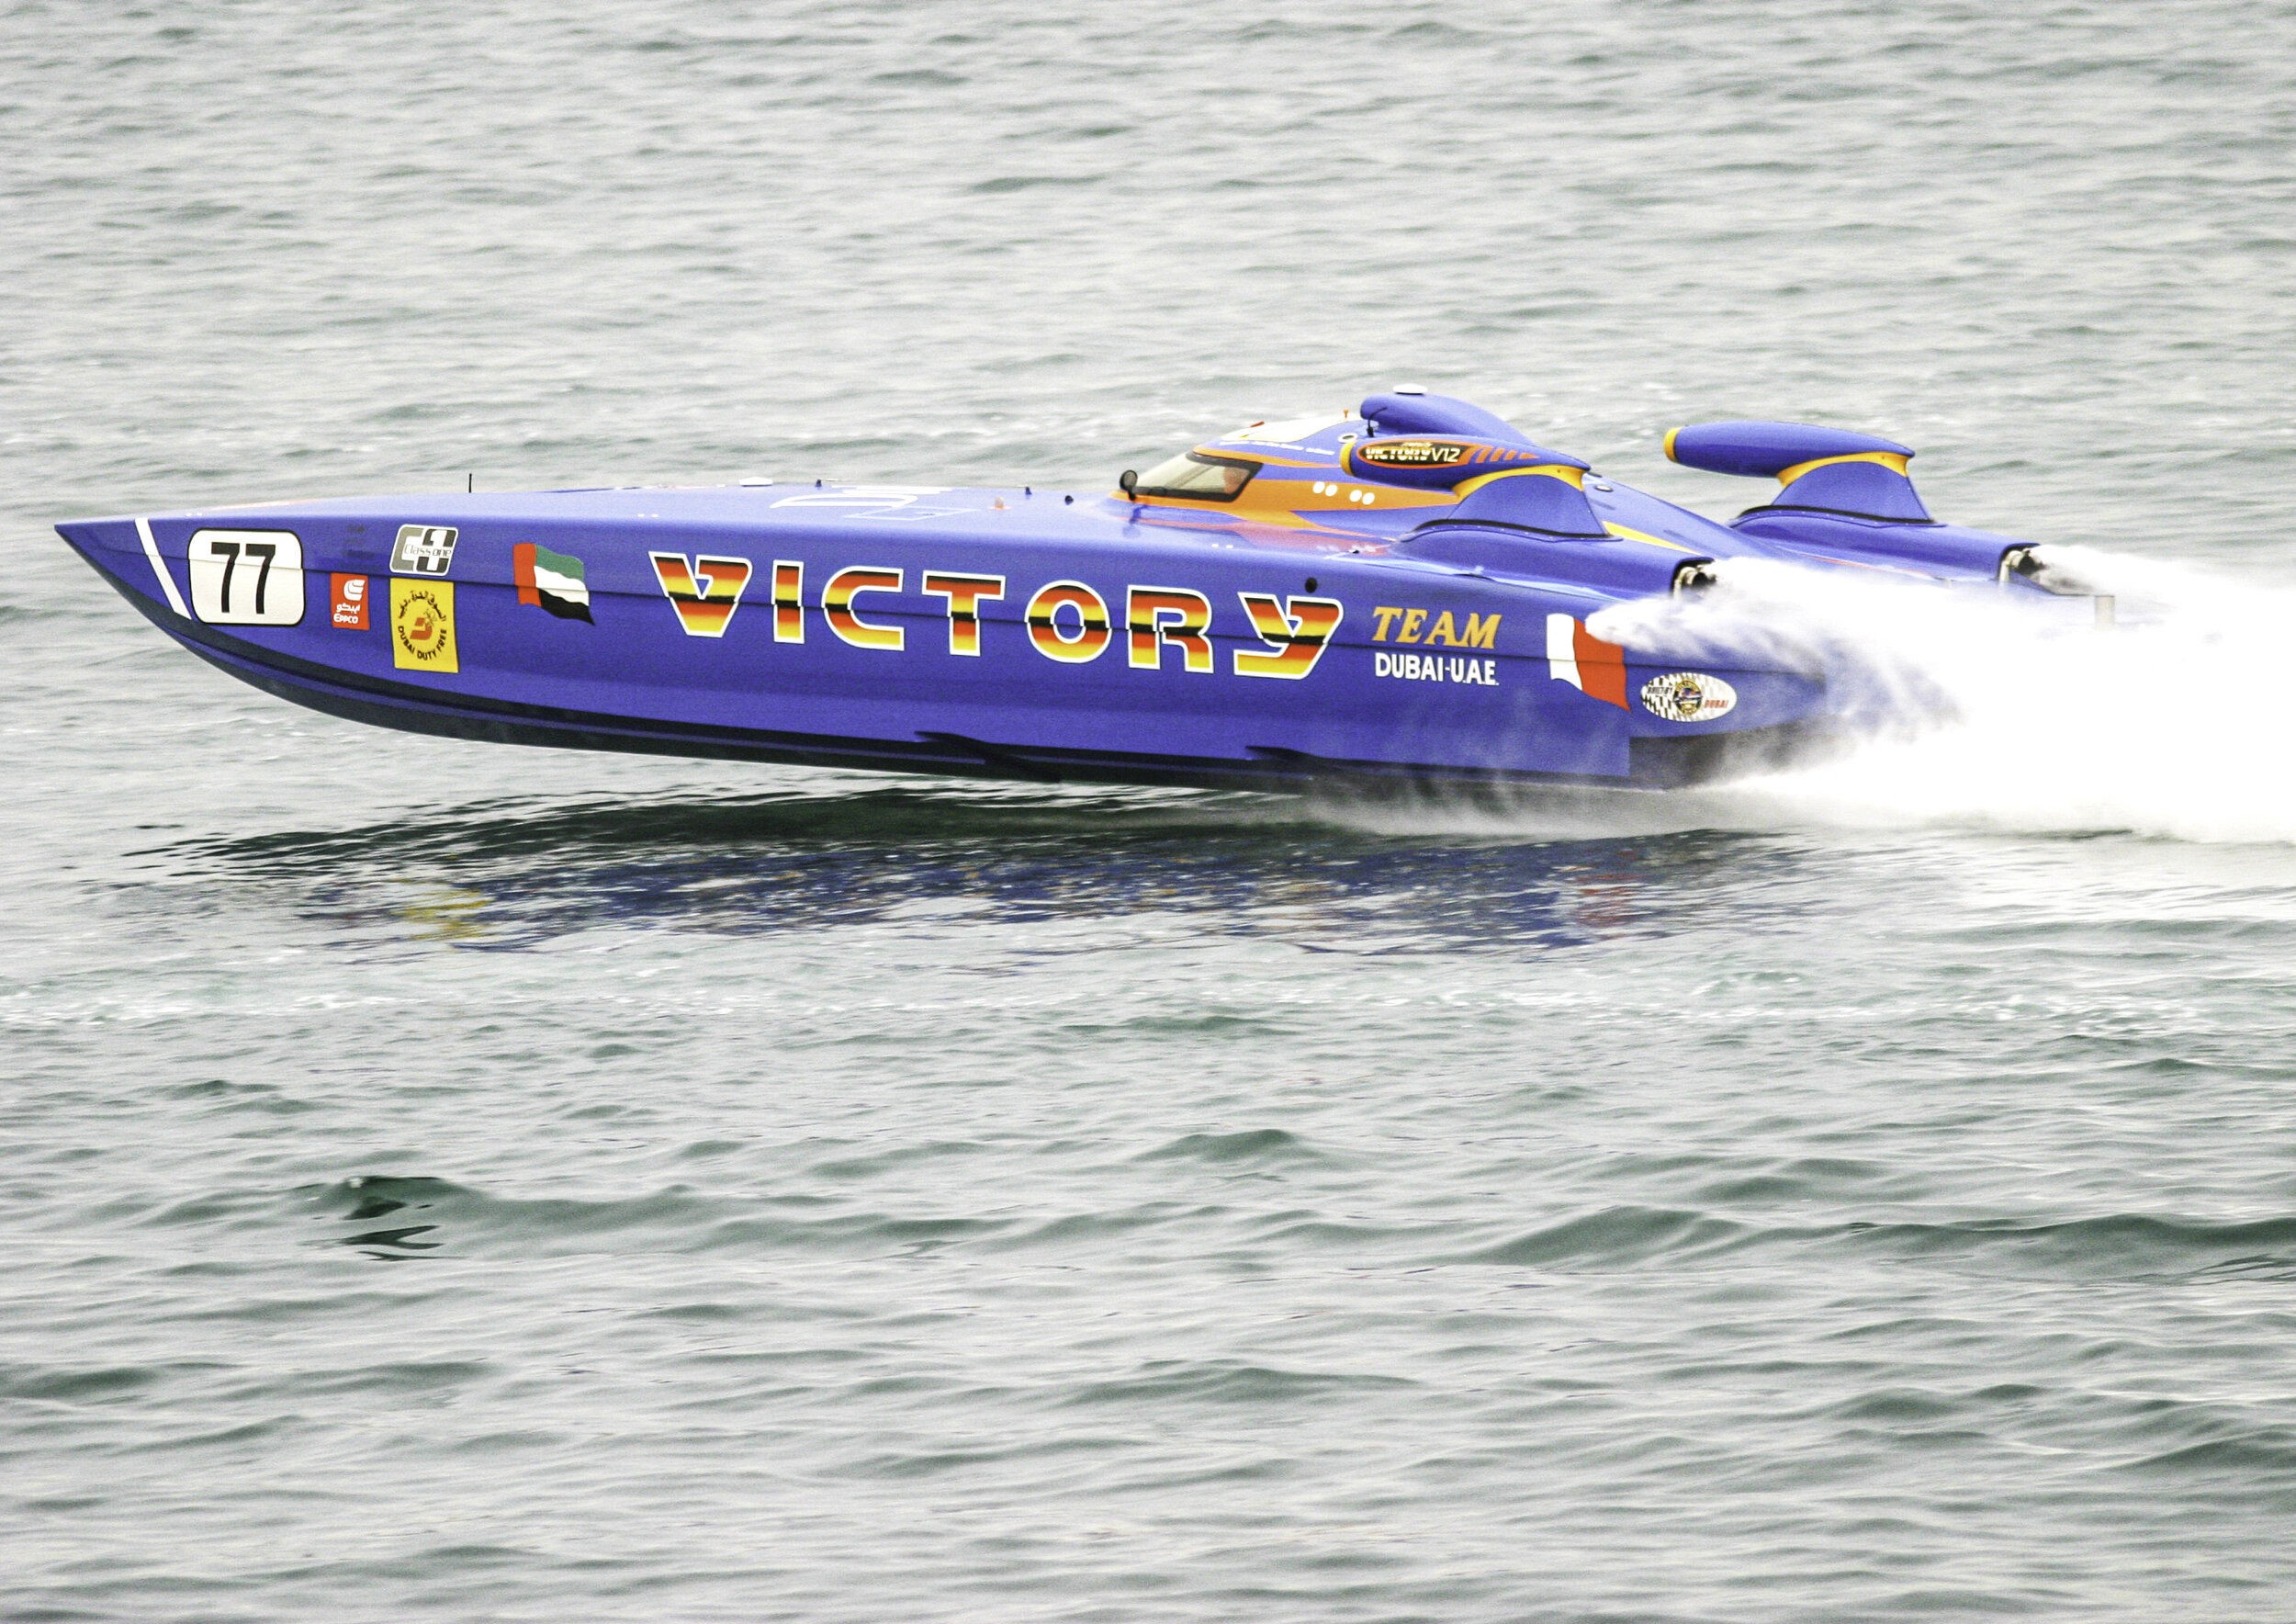 Powerboat Racing / UAE Victory Team